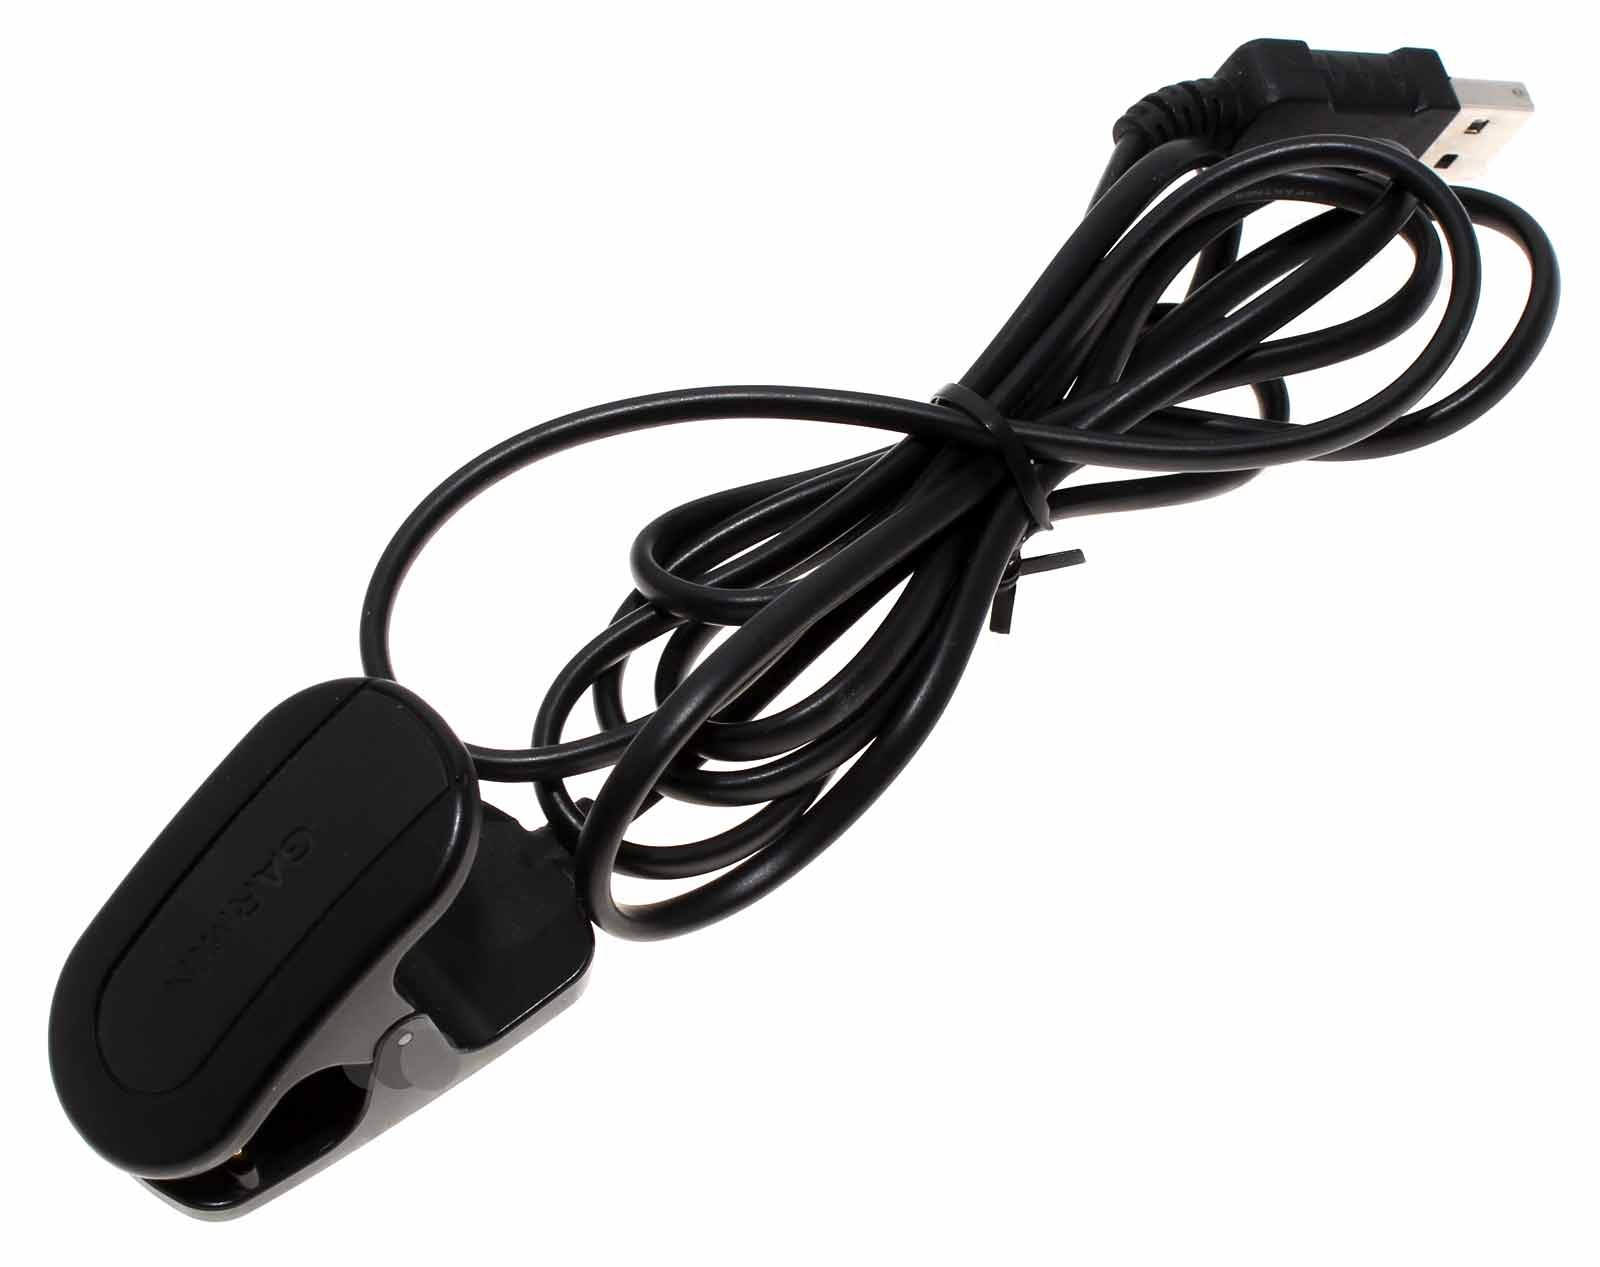 Gebrauchtes USB Ladekabel, Ladeadapter, Ladeklemme, Ladestation für die Garmin Forerunner 405 GPS Sportuhr